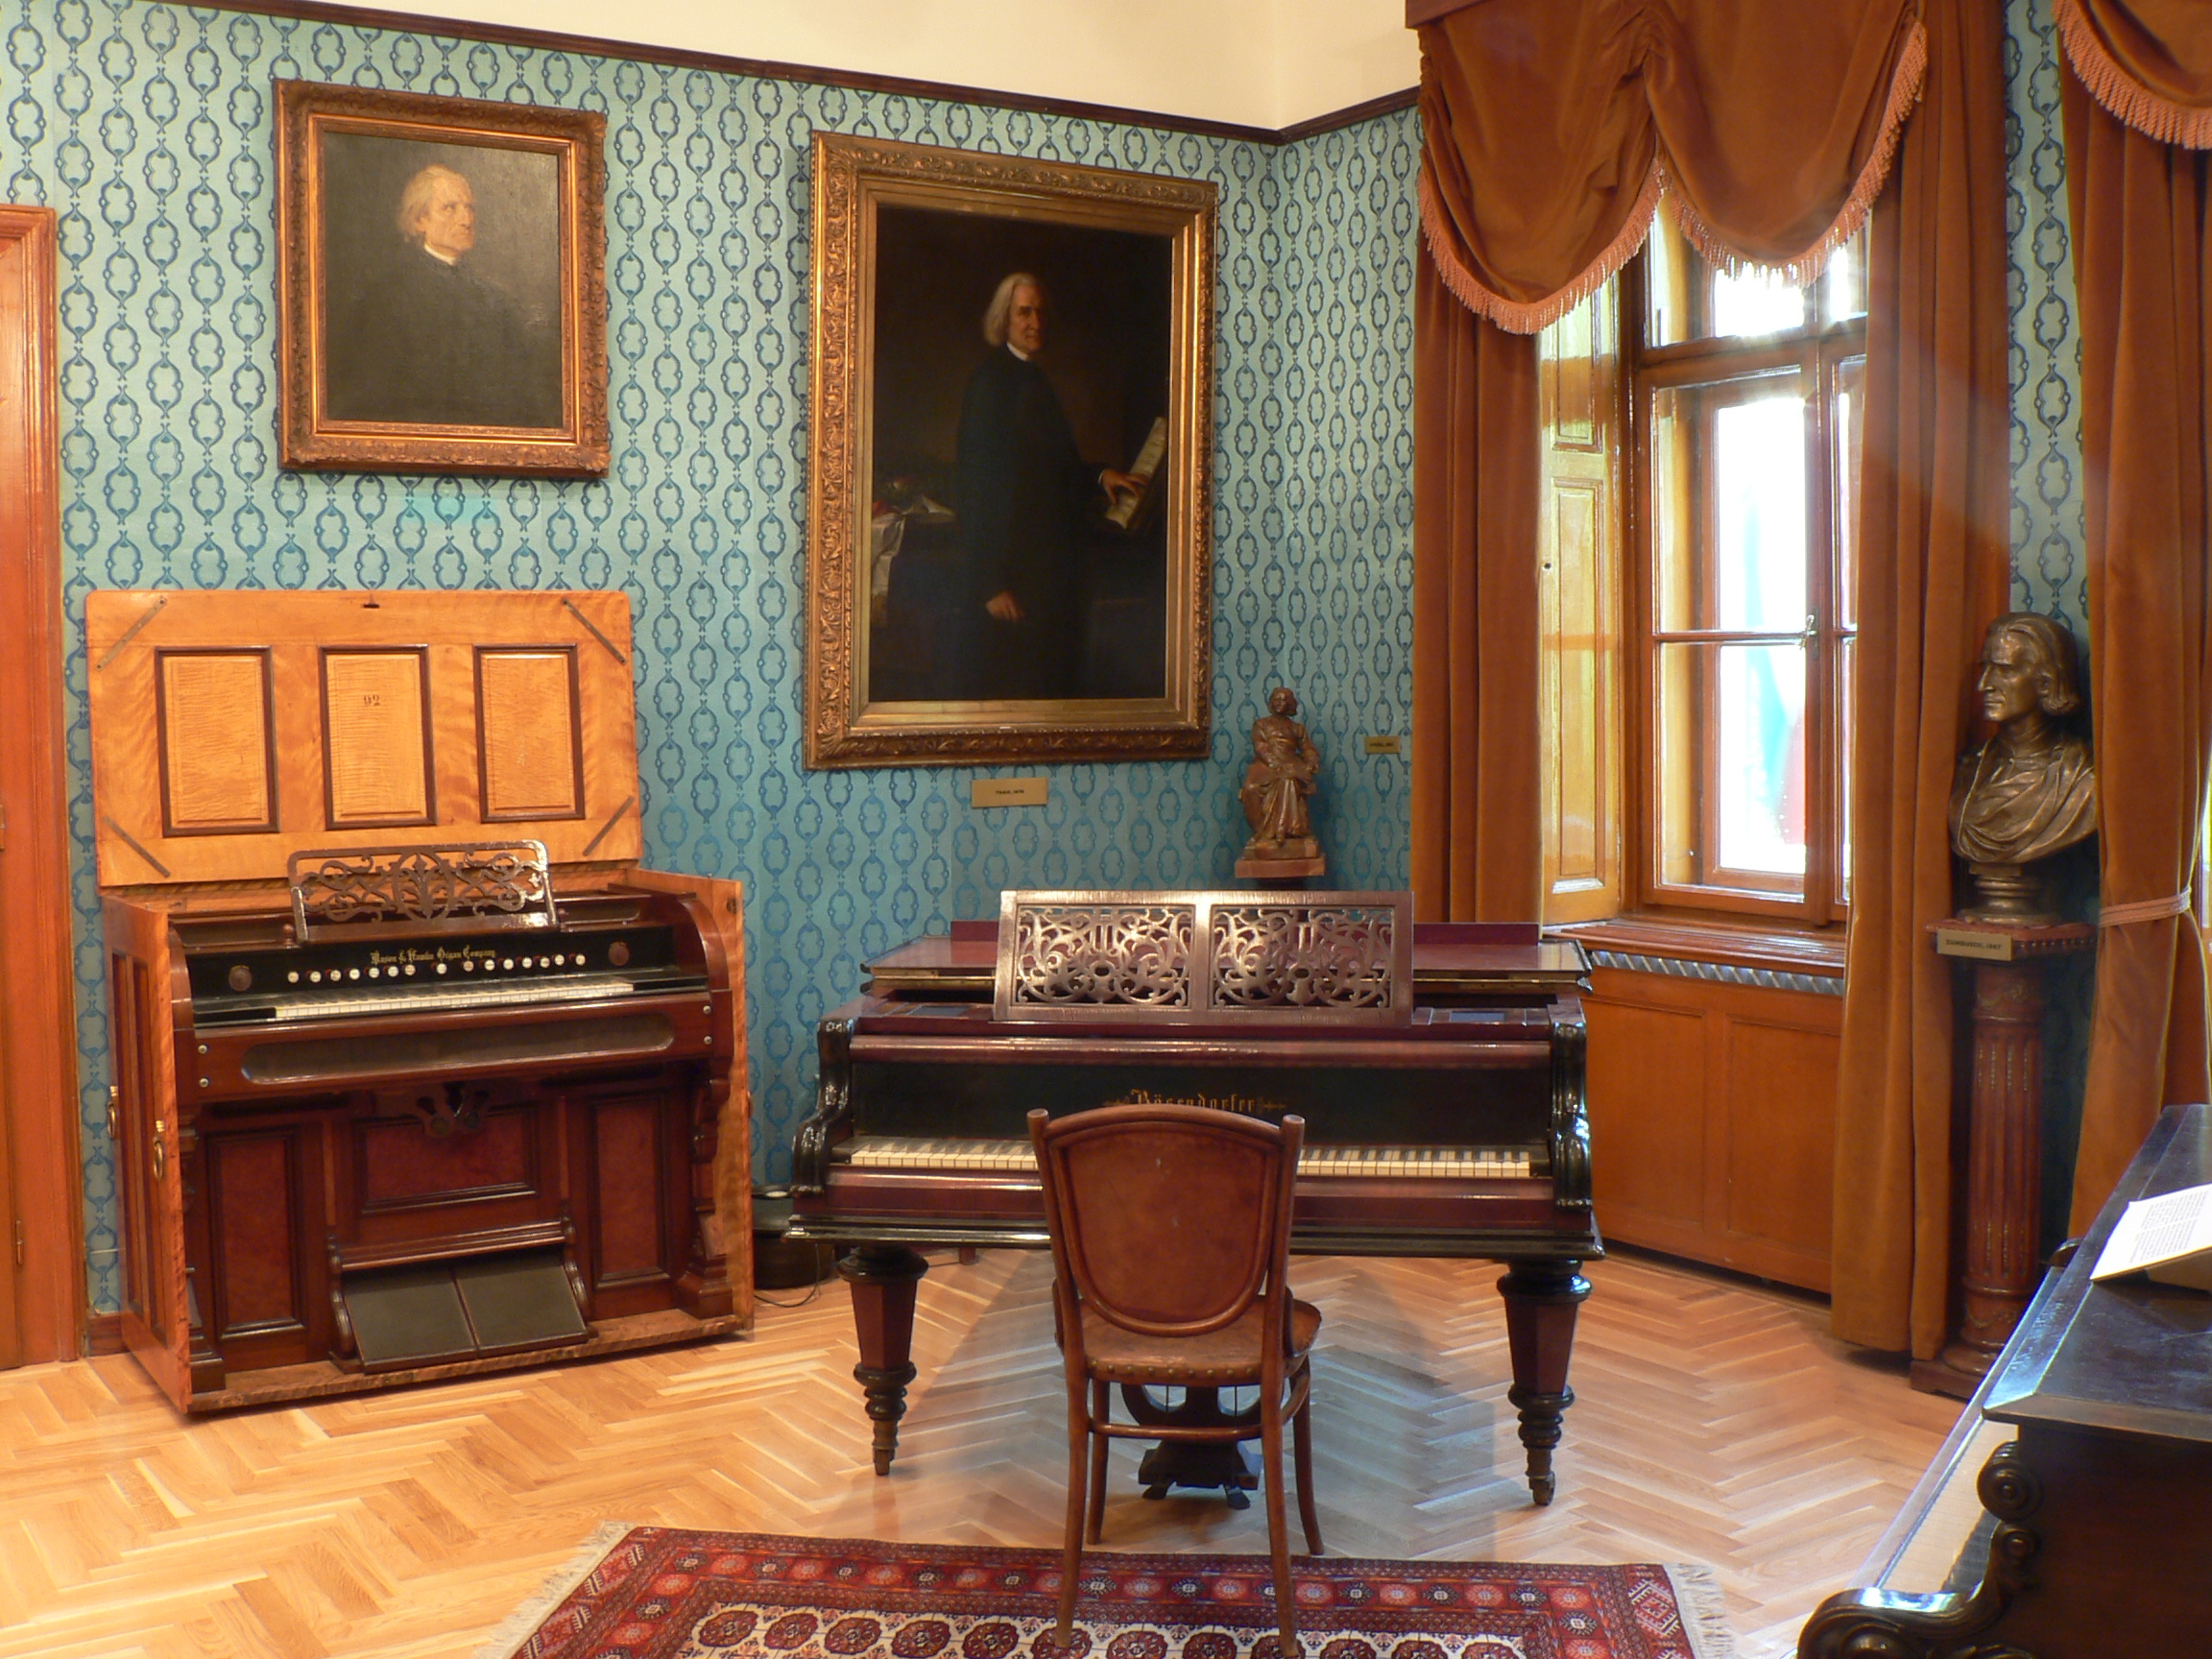 Liszt Ferenc Memorial Museum, Liszt Ferenc Academy of Music. Photo: Miklós Török